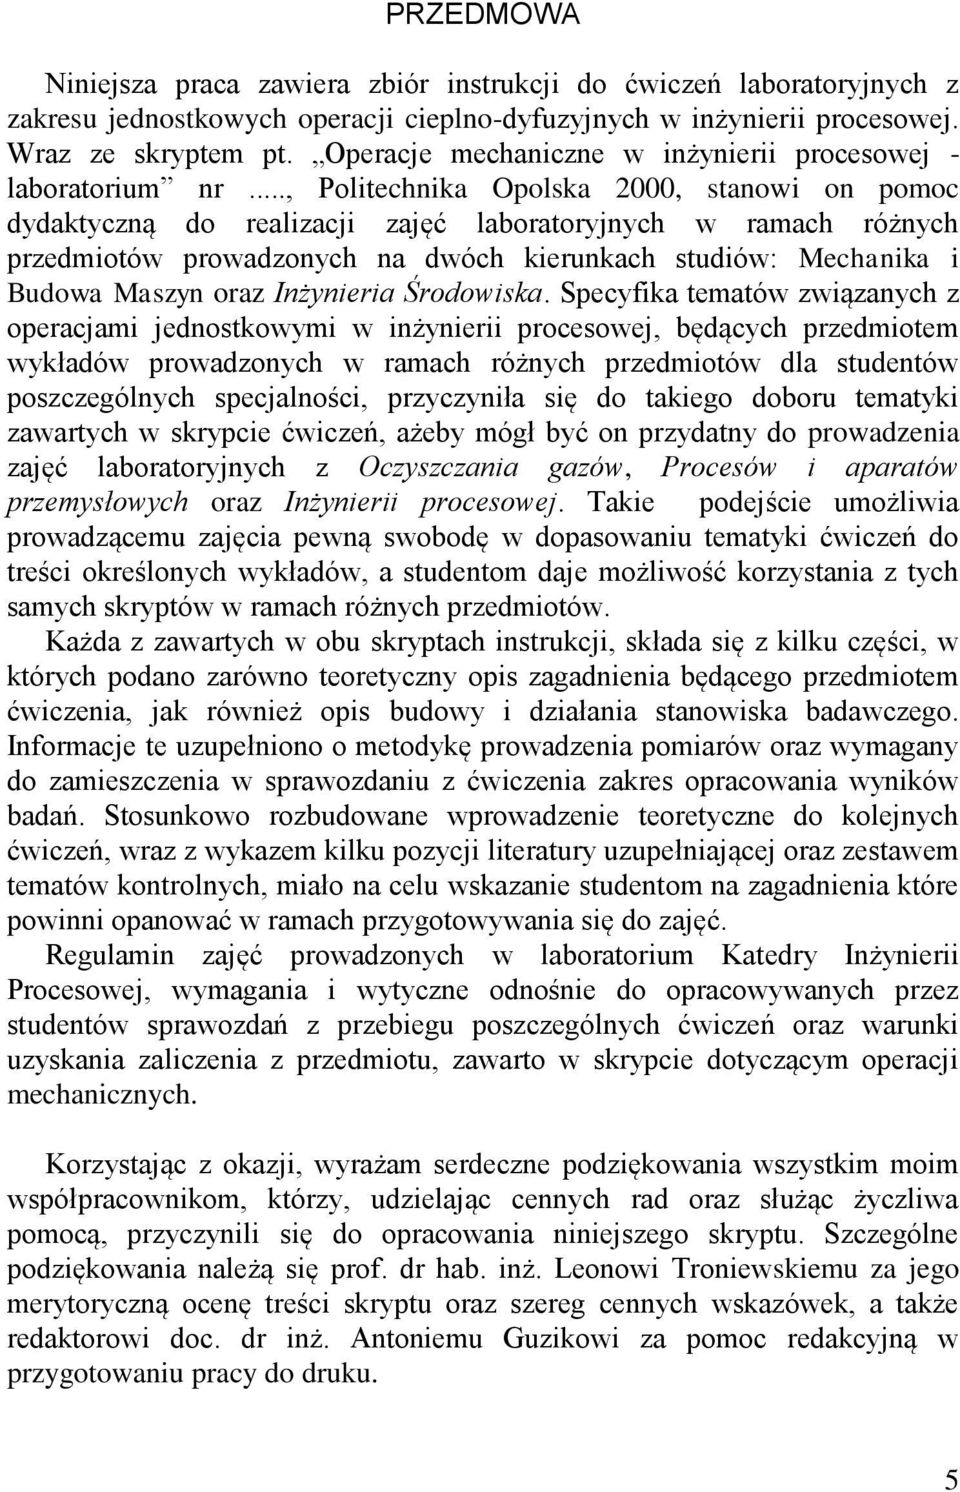 .., Politechnika Opolska 2000, stanowi on pomoc dydaktyczną do realizacji zajęć laboratoryjnych w ramach różnych przedmiotów prowadzonych na dwóch kierunkach studiów: Mechanika i Budowa Maszyn oraz